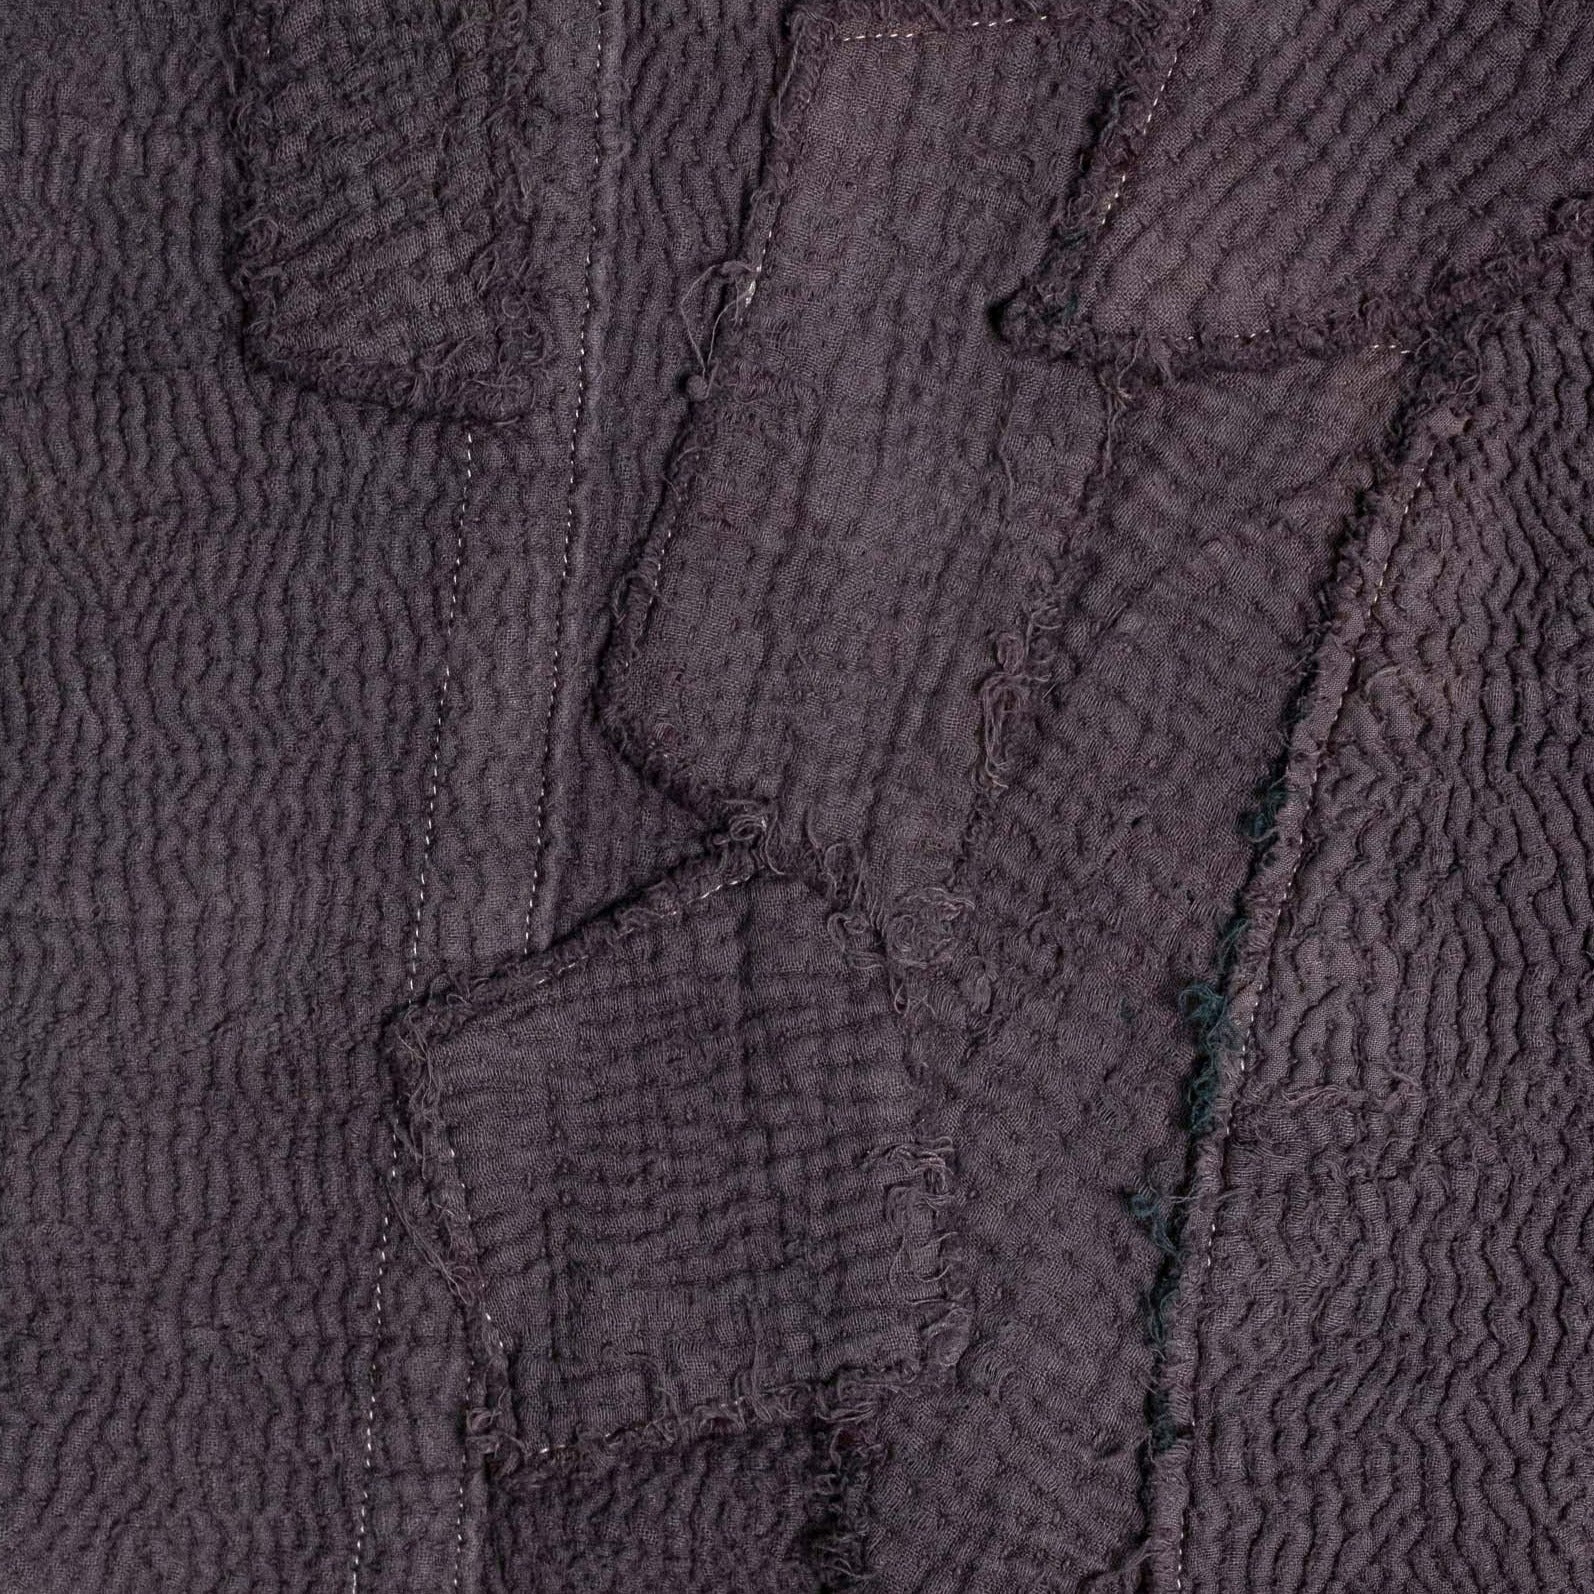 Detail of purple Kantha Quilt Jacket stitches